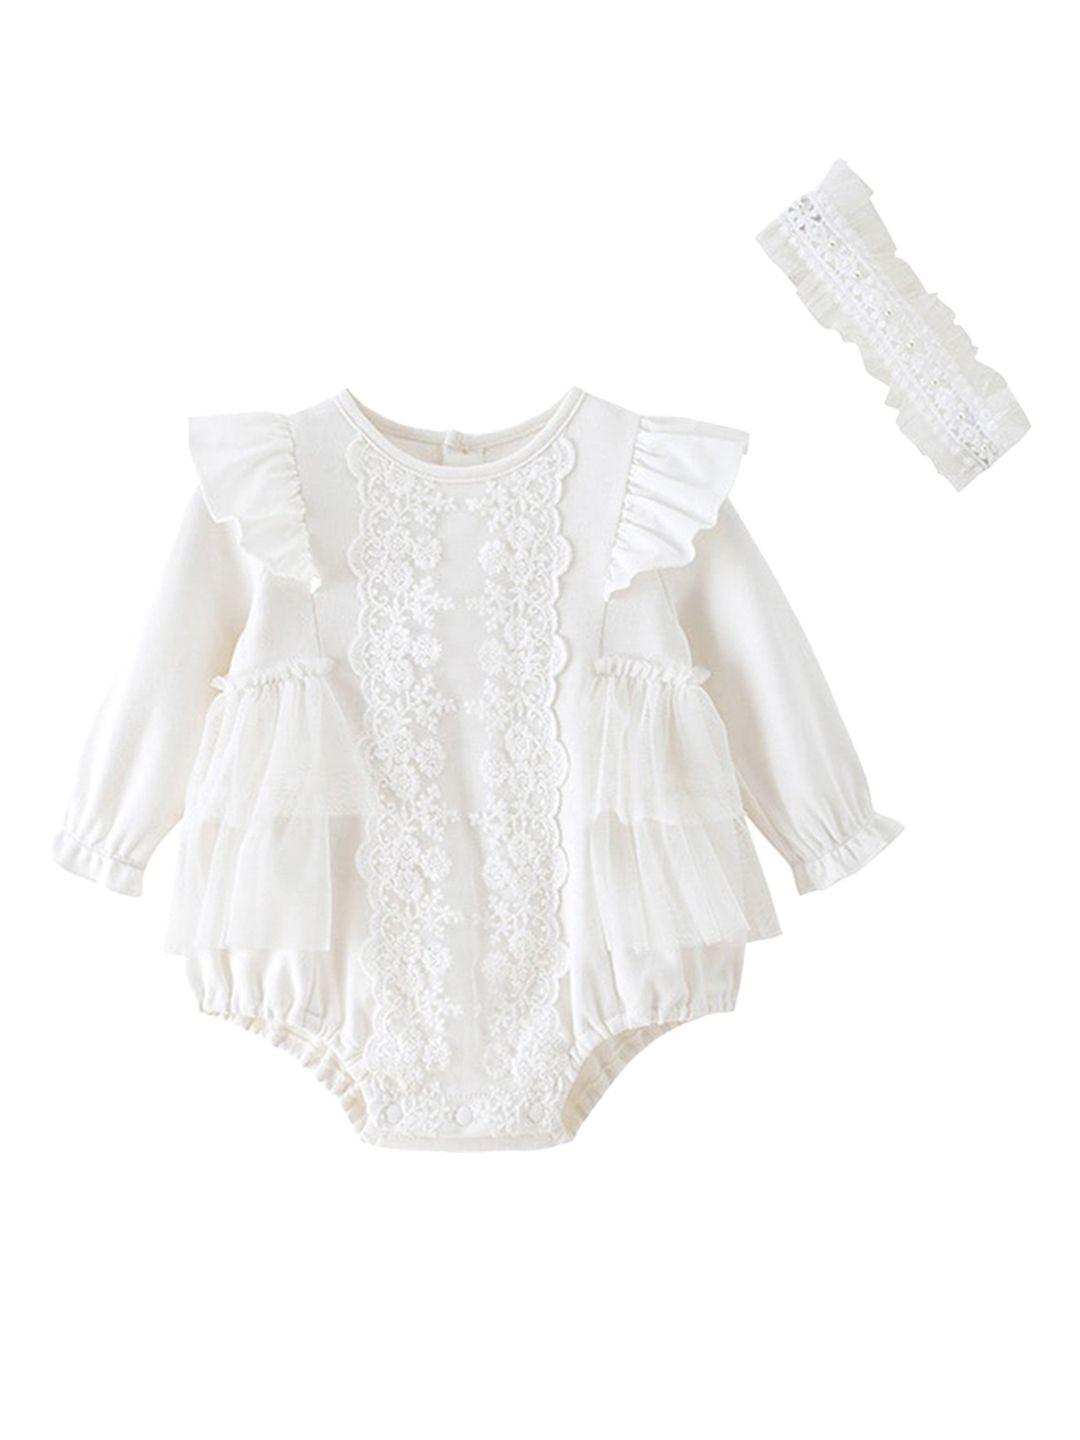 stylecast-white-infants-girls-self-design-cotton-romper